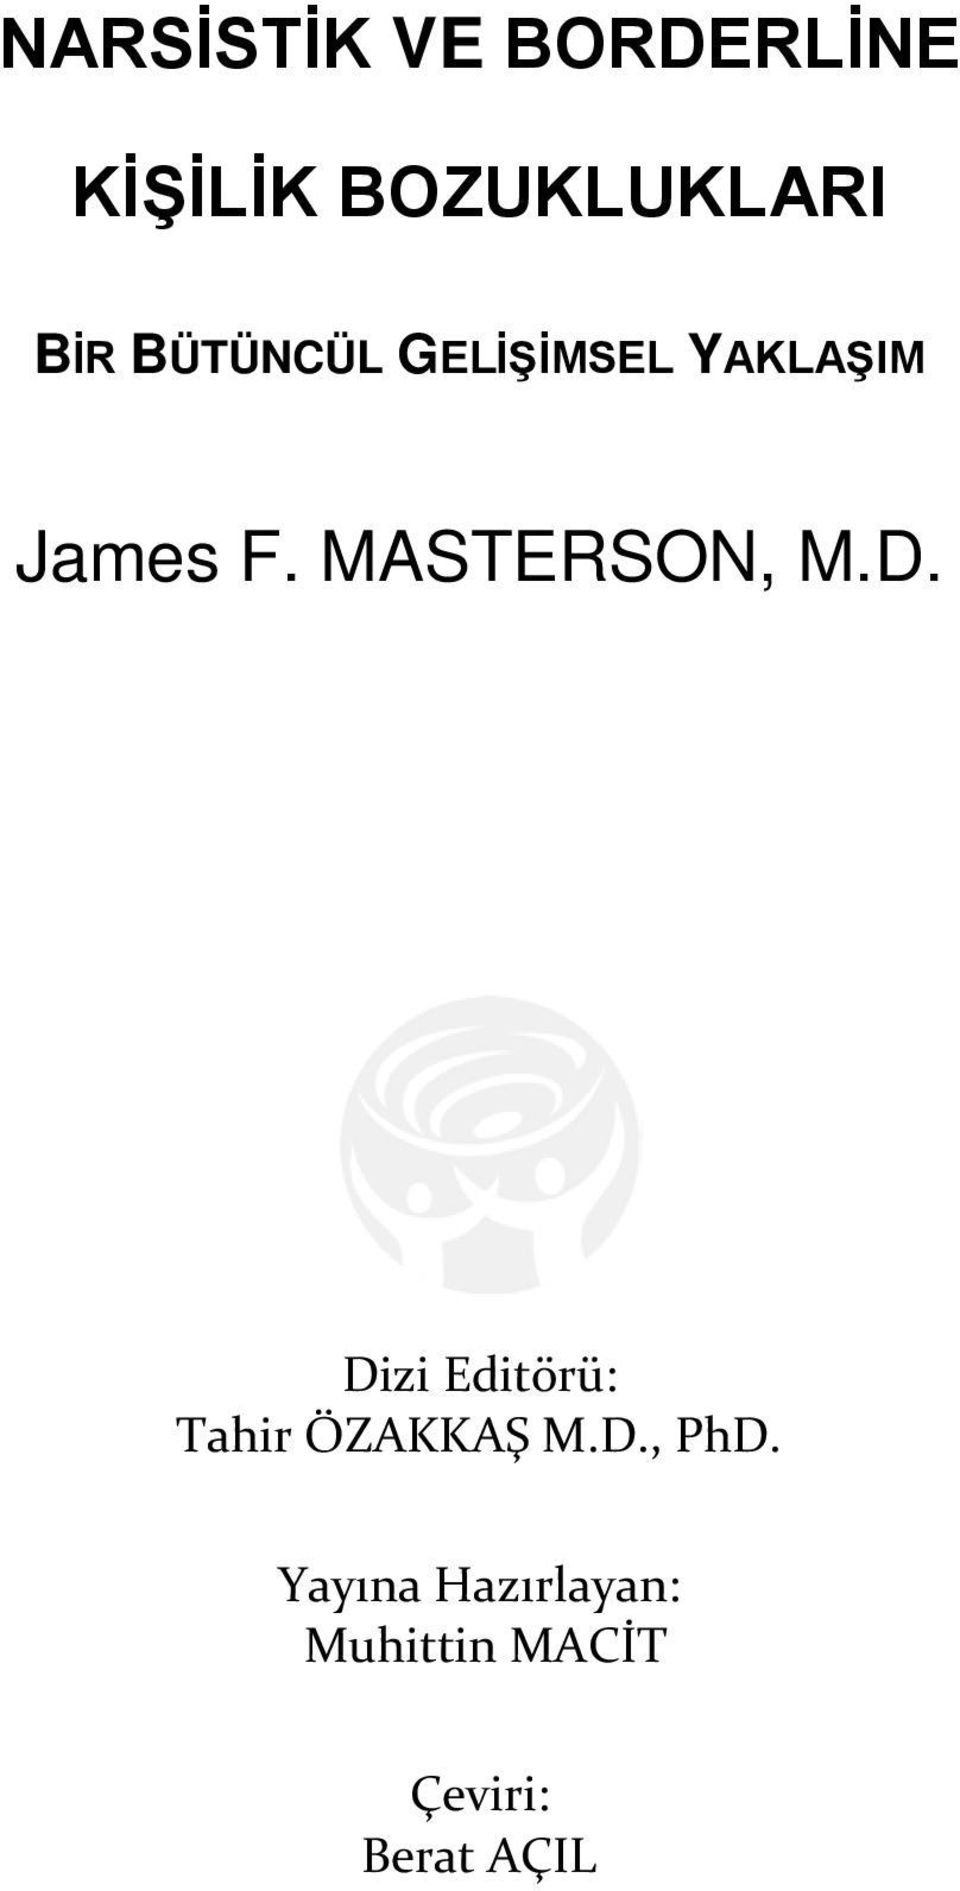 MASTERSON, M.D. Dizi Editörü: Tahir ÖZAKKAŞ M.D., PhD.